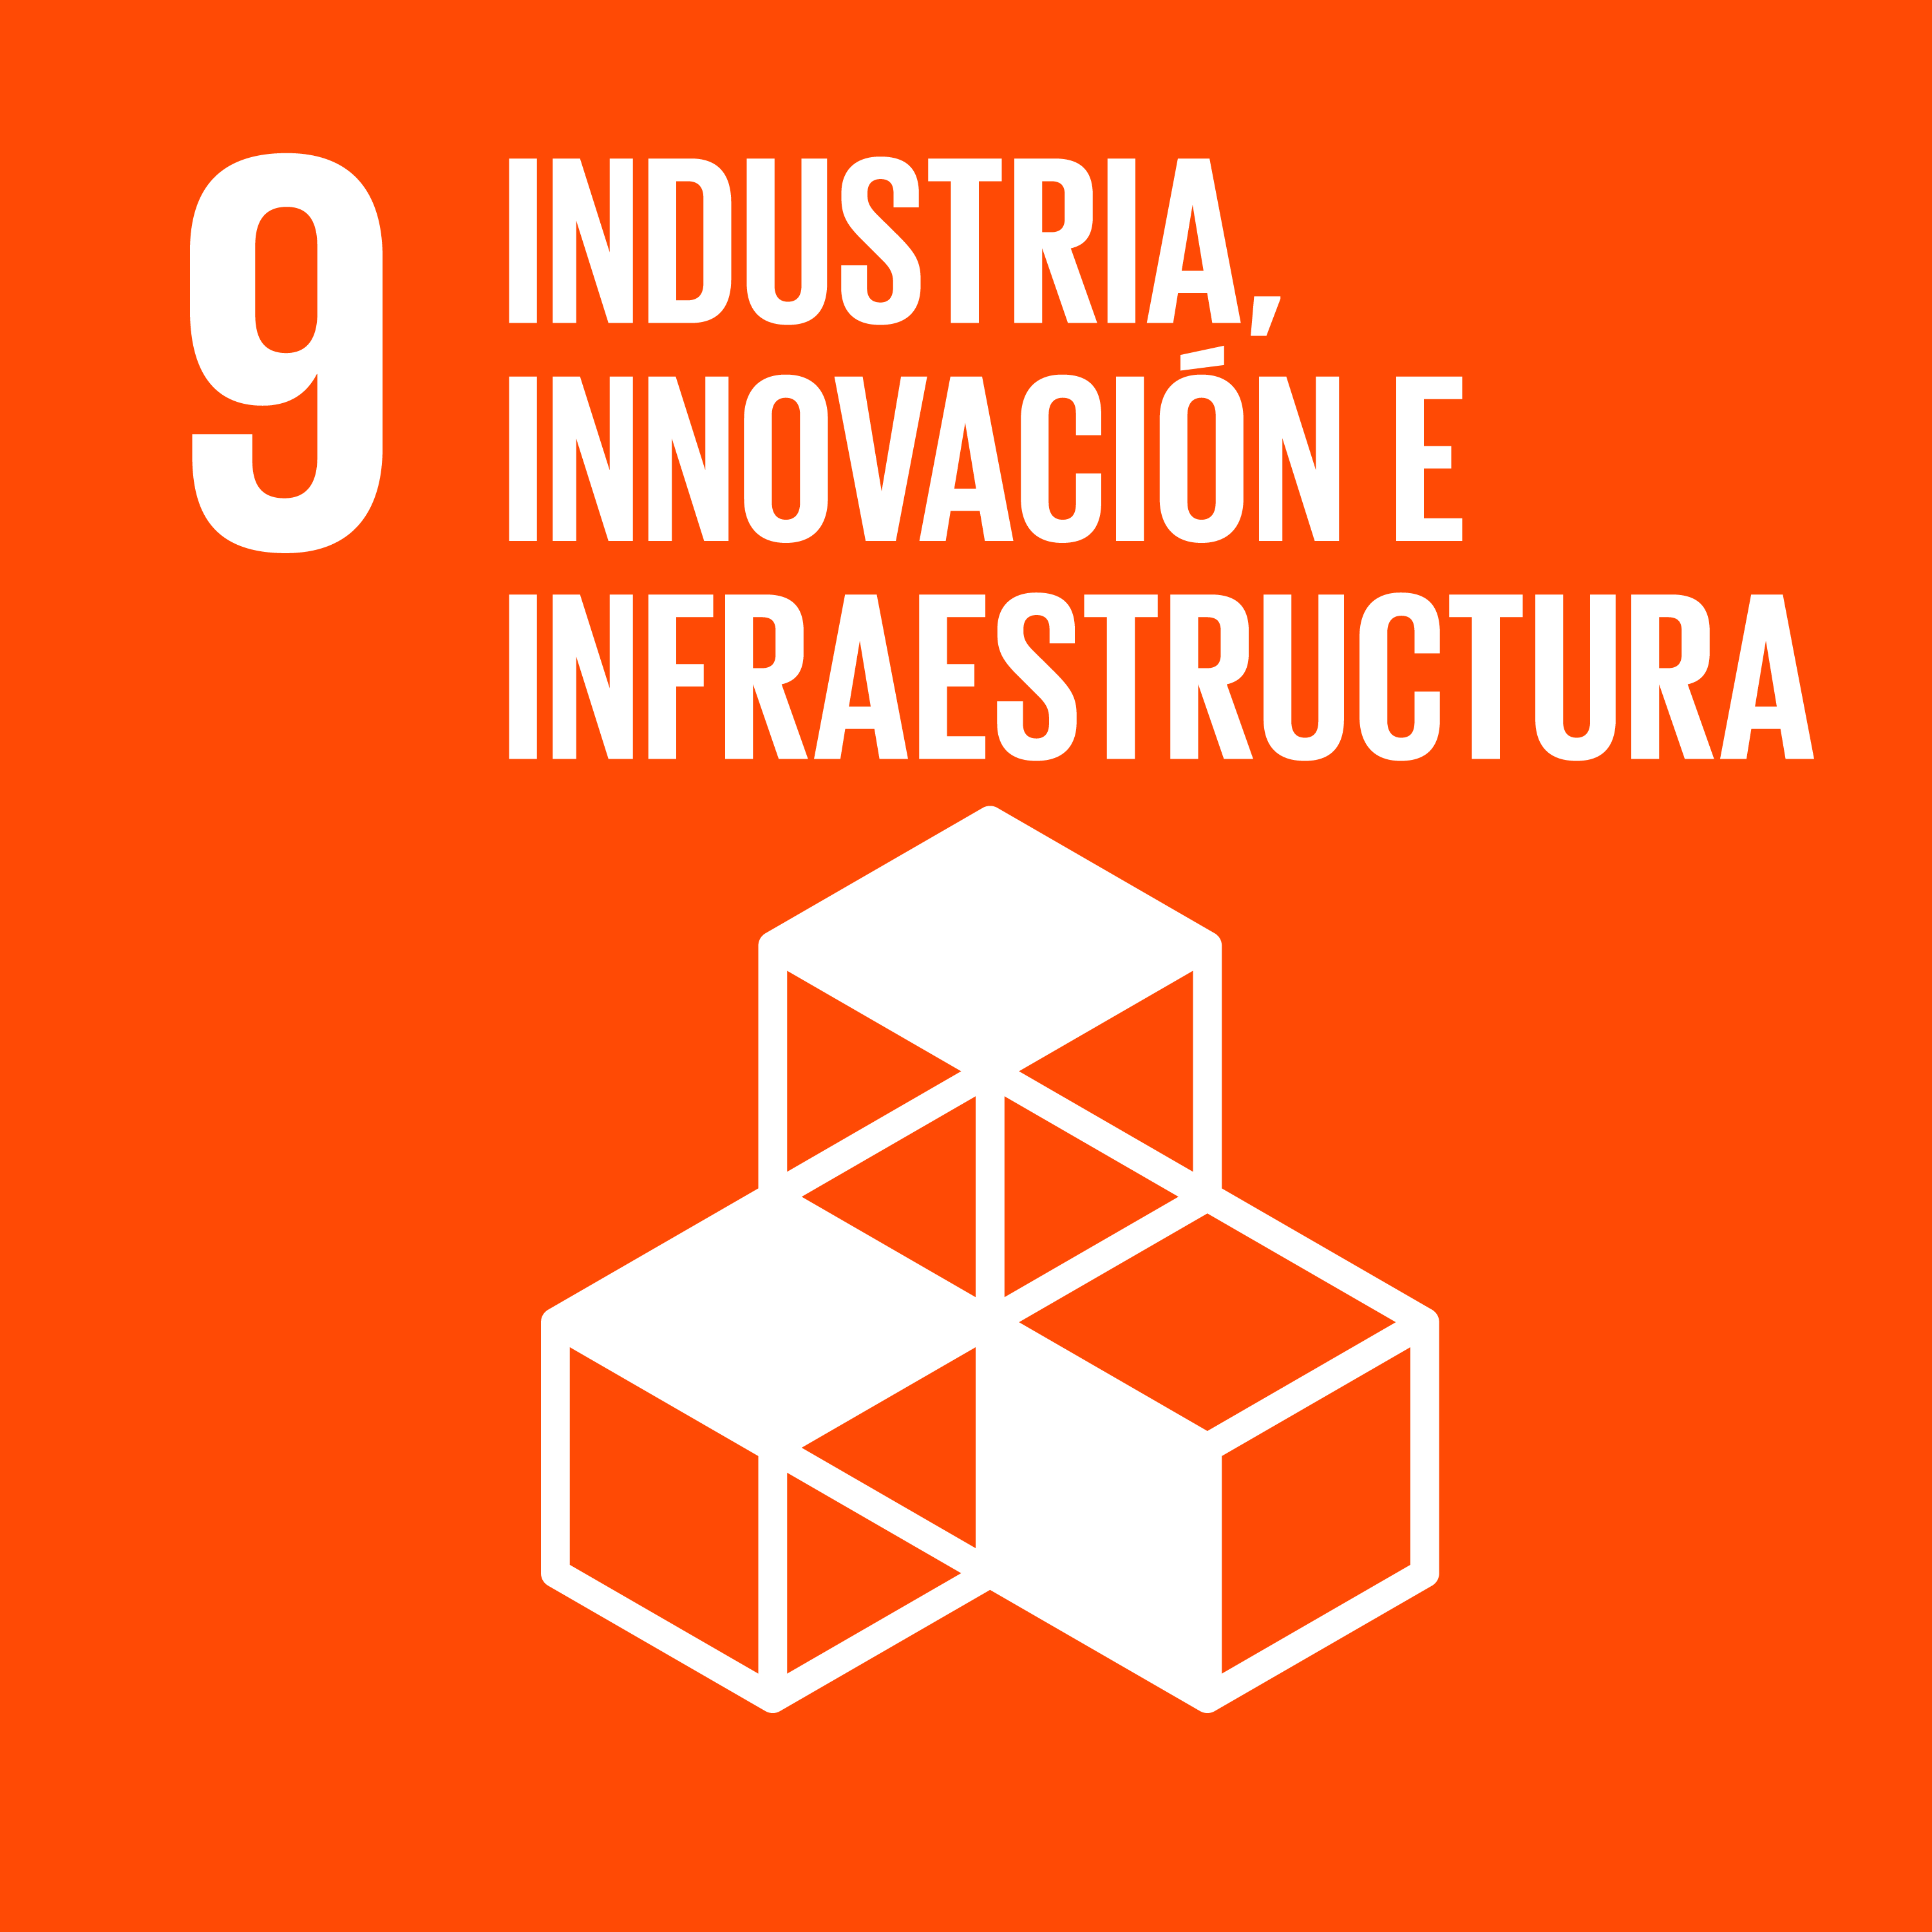 09 Industria, innovación e infraestructura